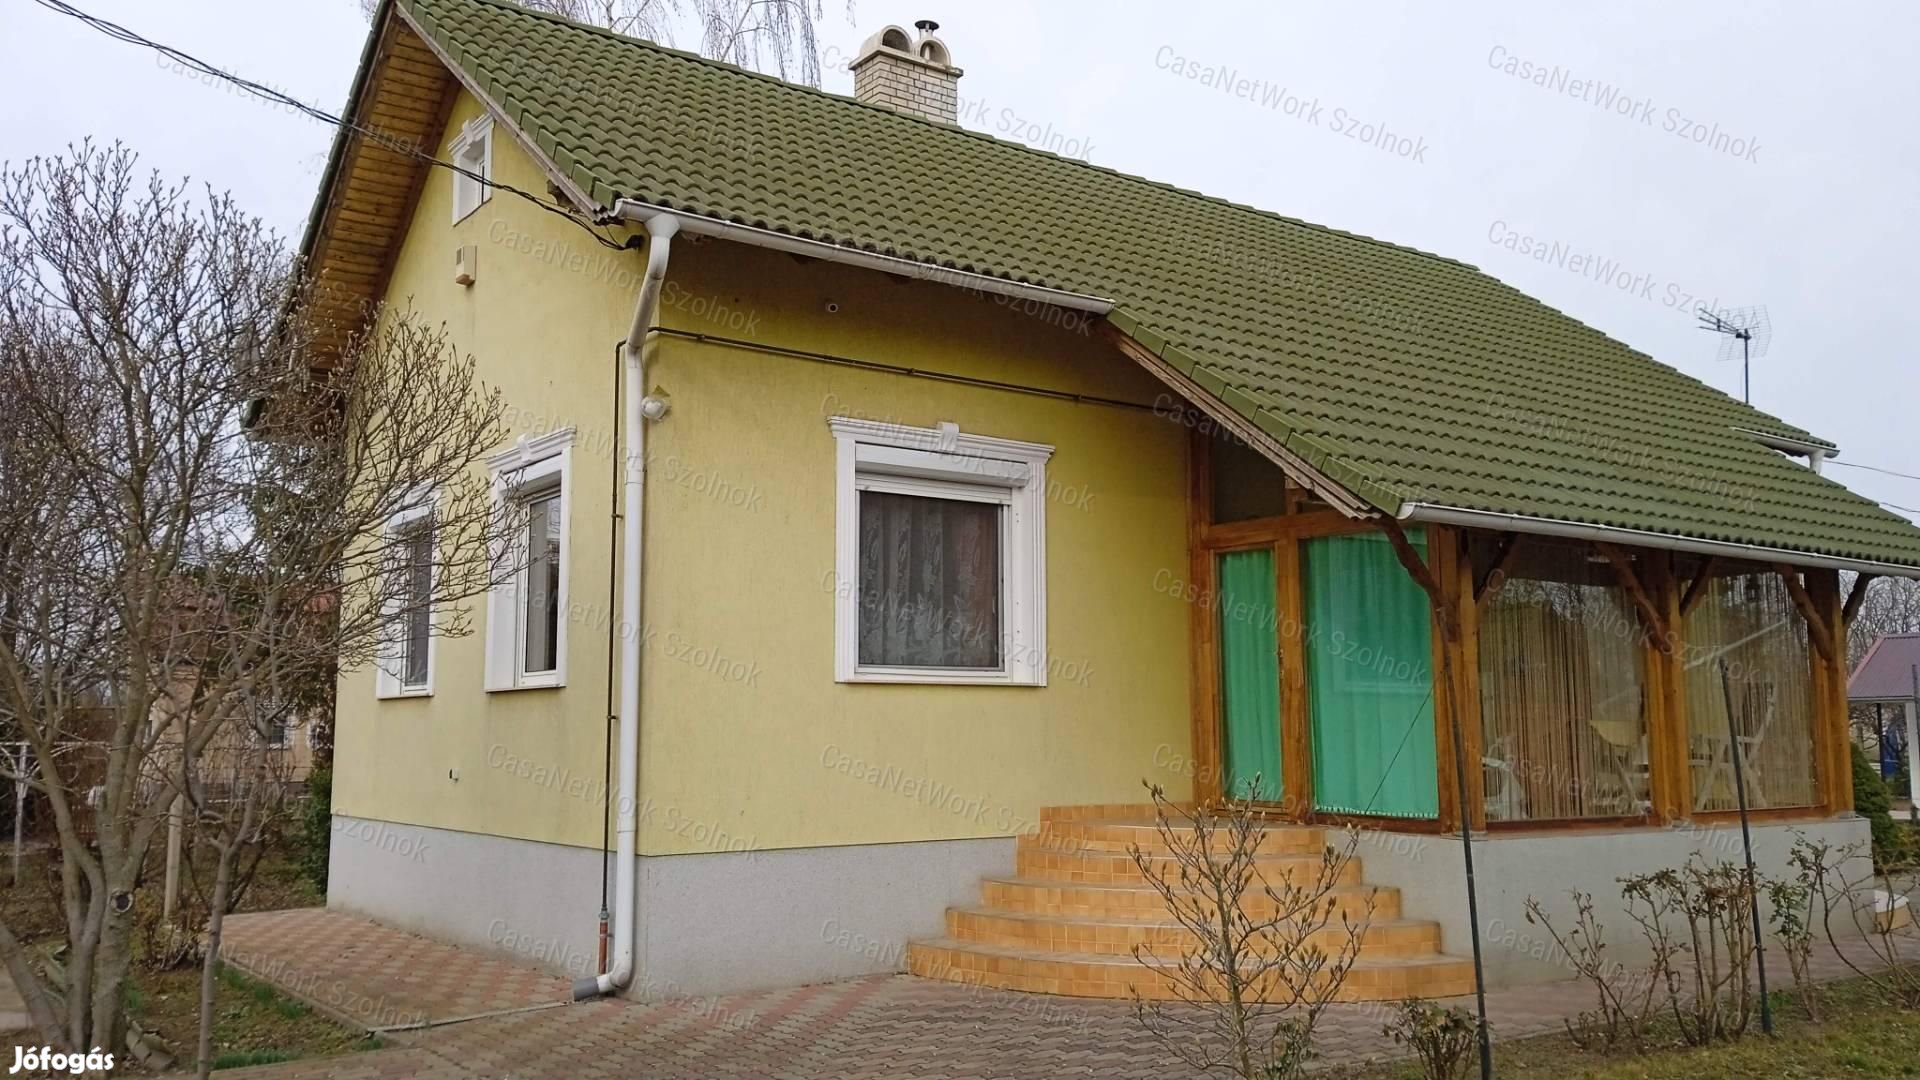 Eladó Tiszaföldváron 74 m2-es 2  szobás családi ház.